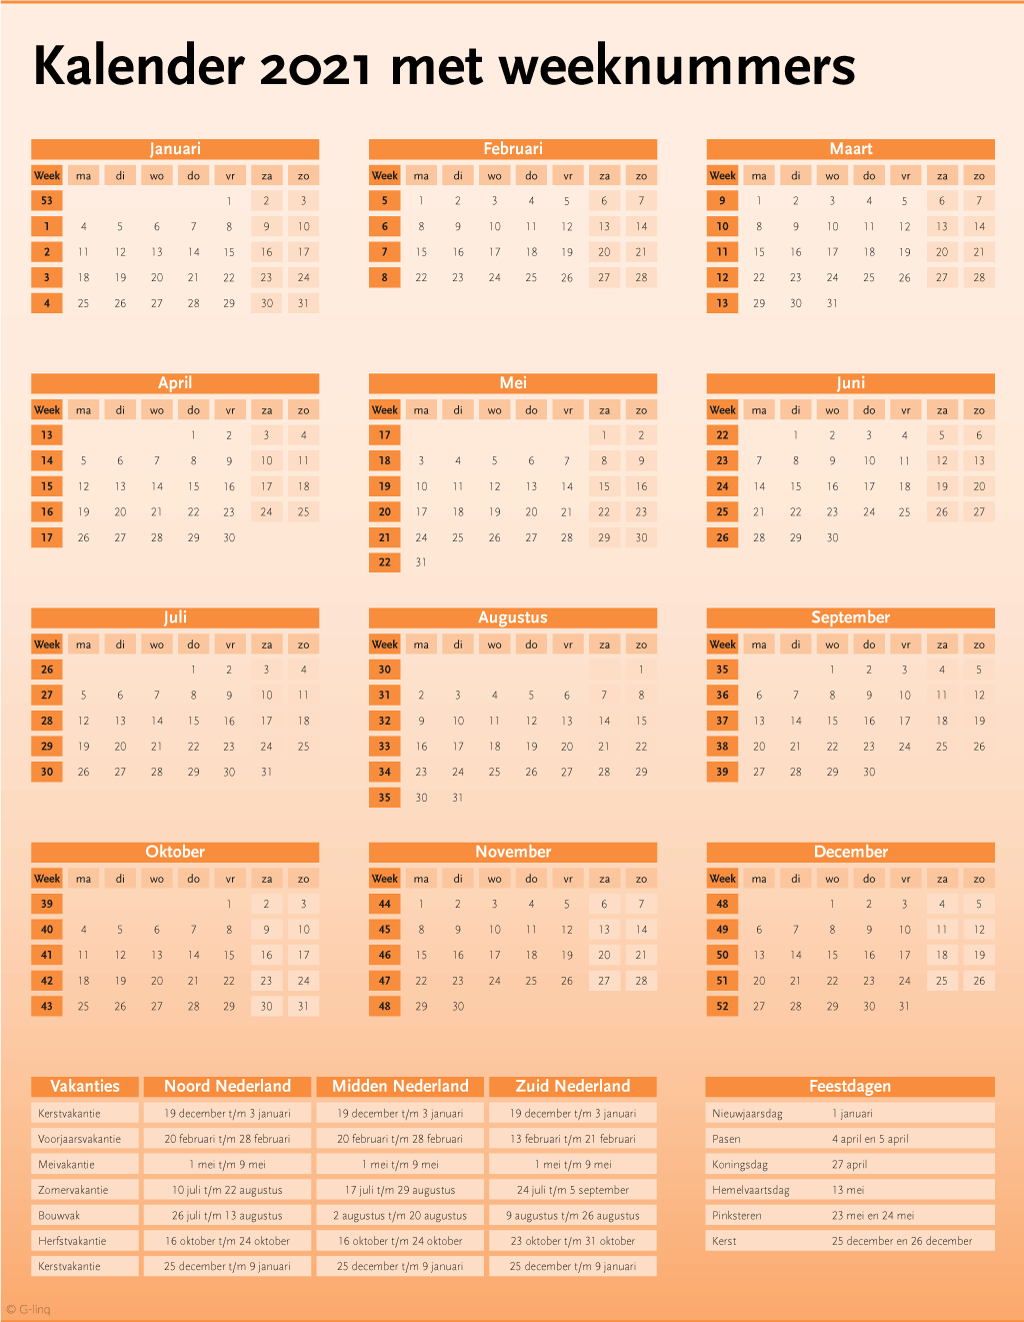 Hoe ziet de jaarkalender van 2021 eruit? U vindt hem hier, met weeknummers en de feestdagen en de schoolvakanties in 2021.